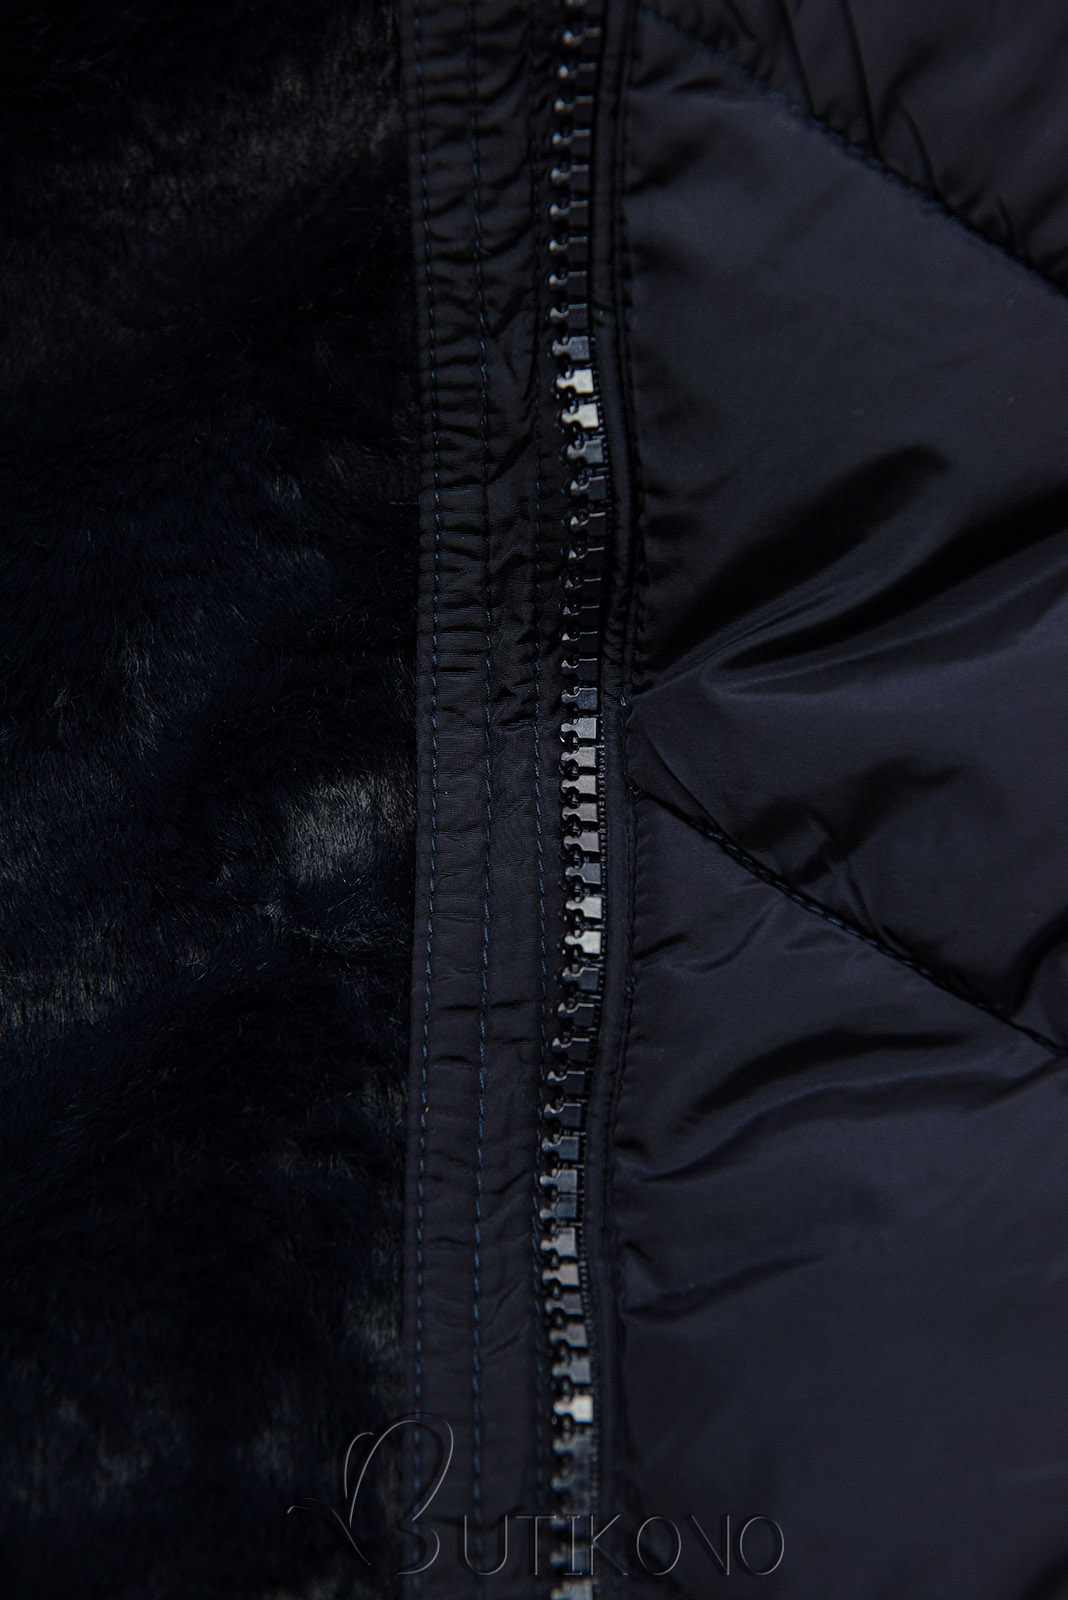 Tmavě modrá prošívaná zimní bunda s odepínatelnou kapucí